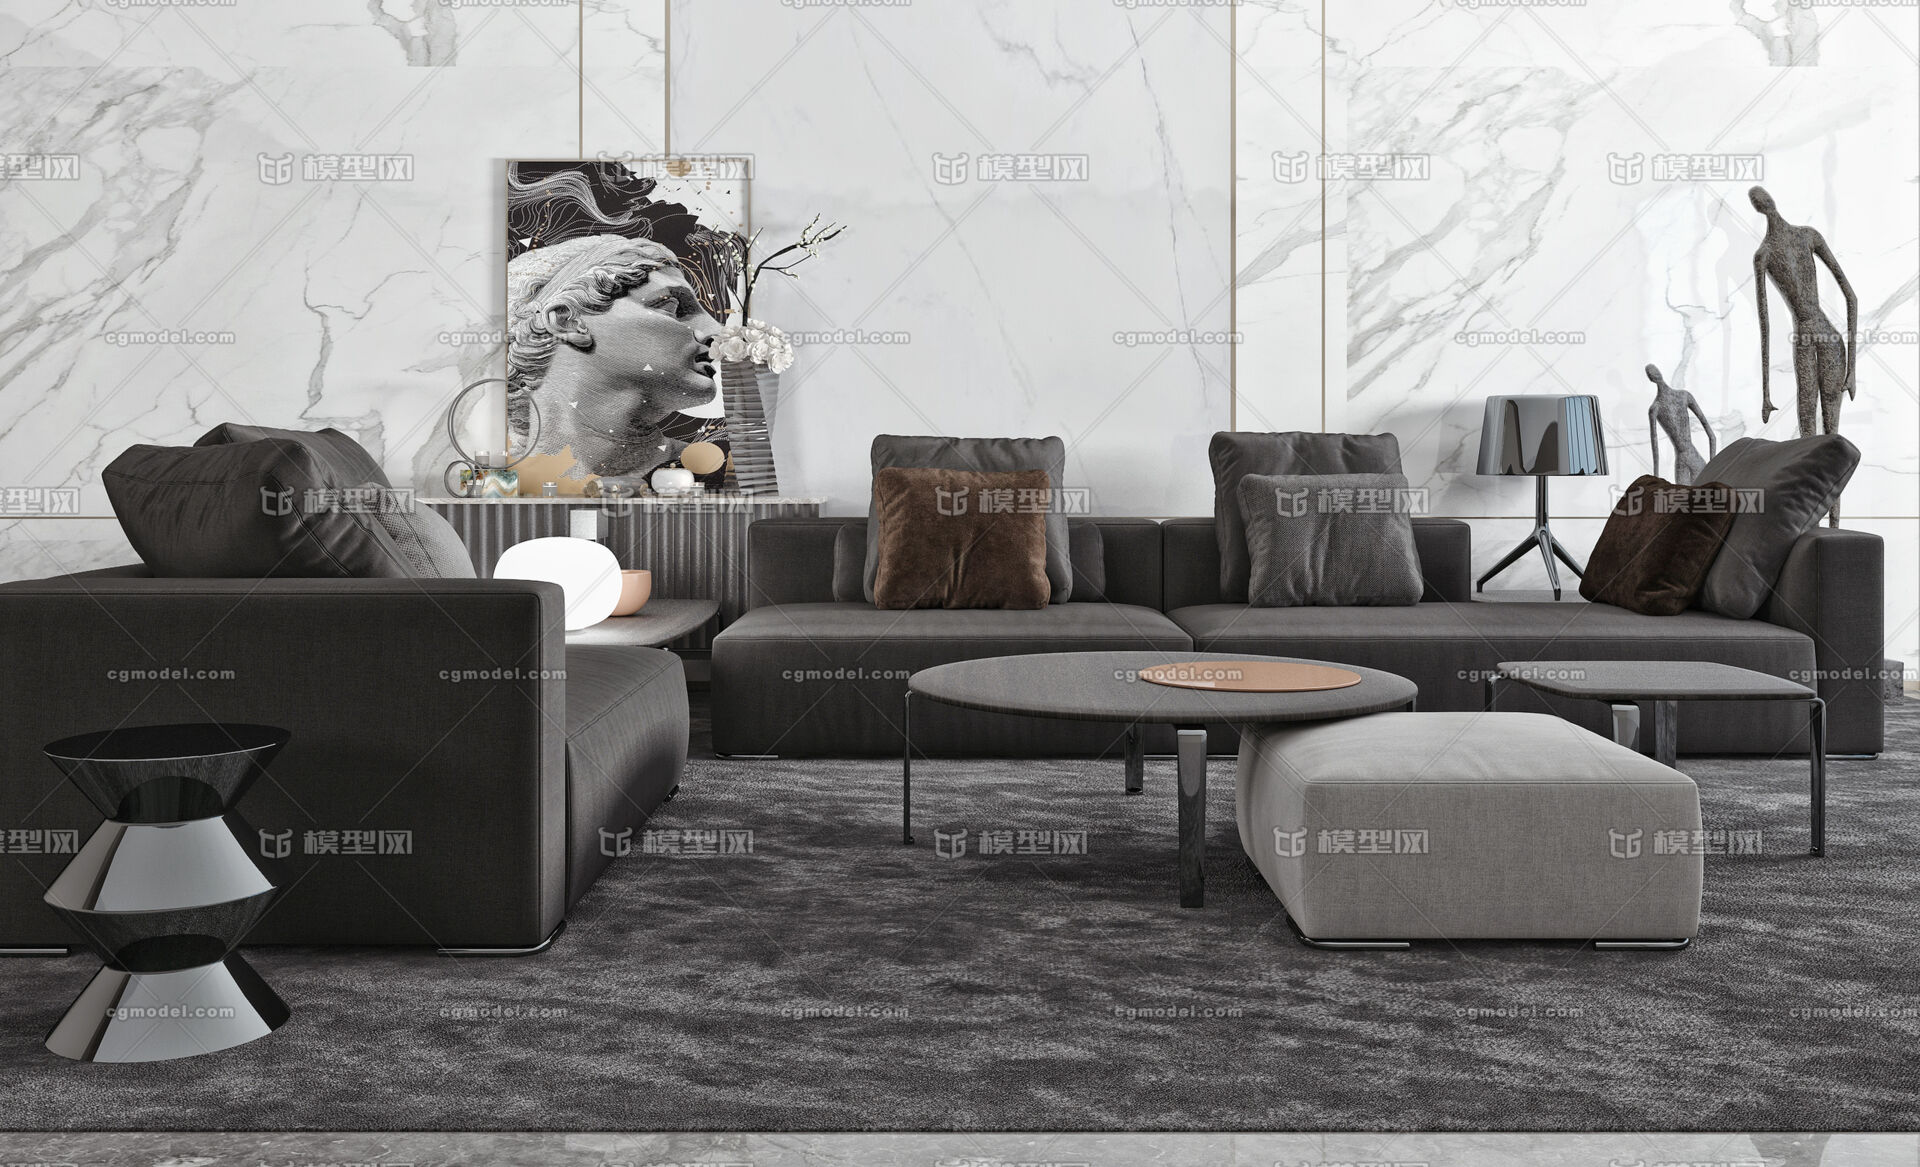 现代转角布艺沙发 圆凳 矮凳 黑白灰色调沙发 边柜 摆件 地毯